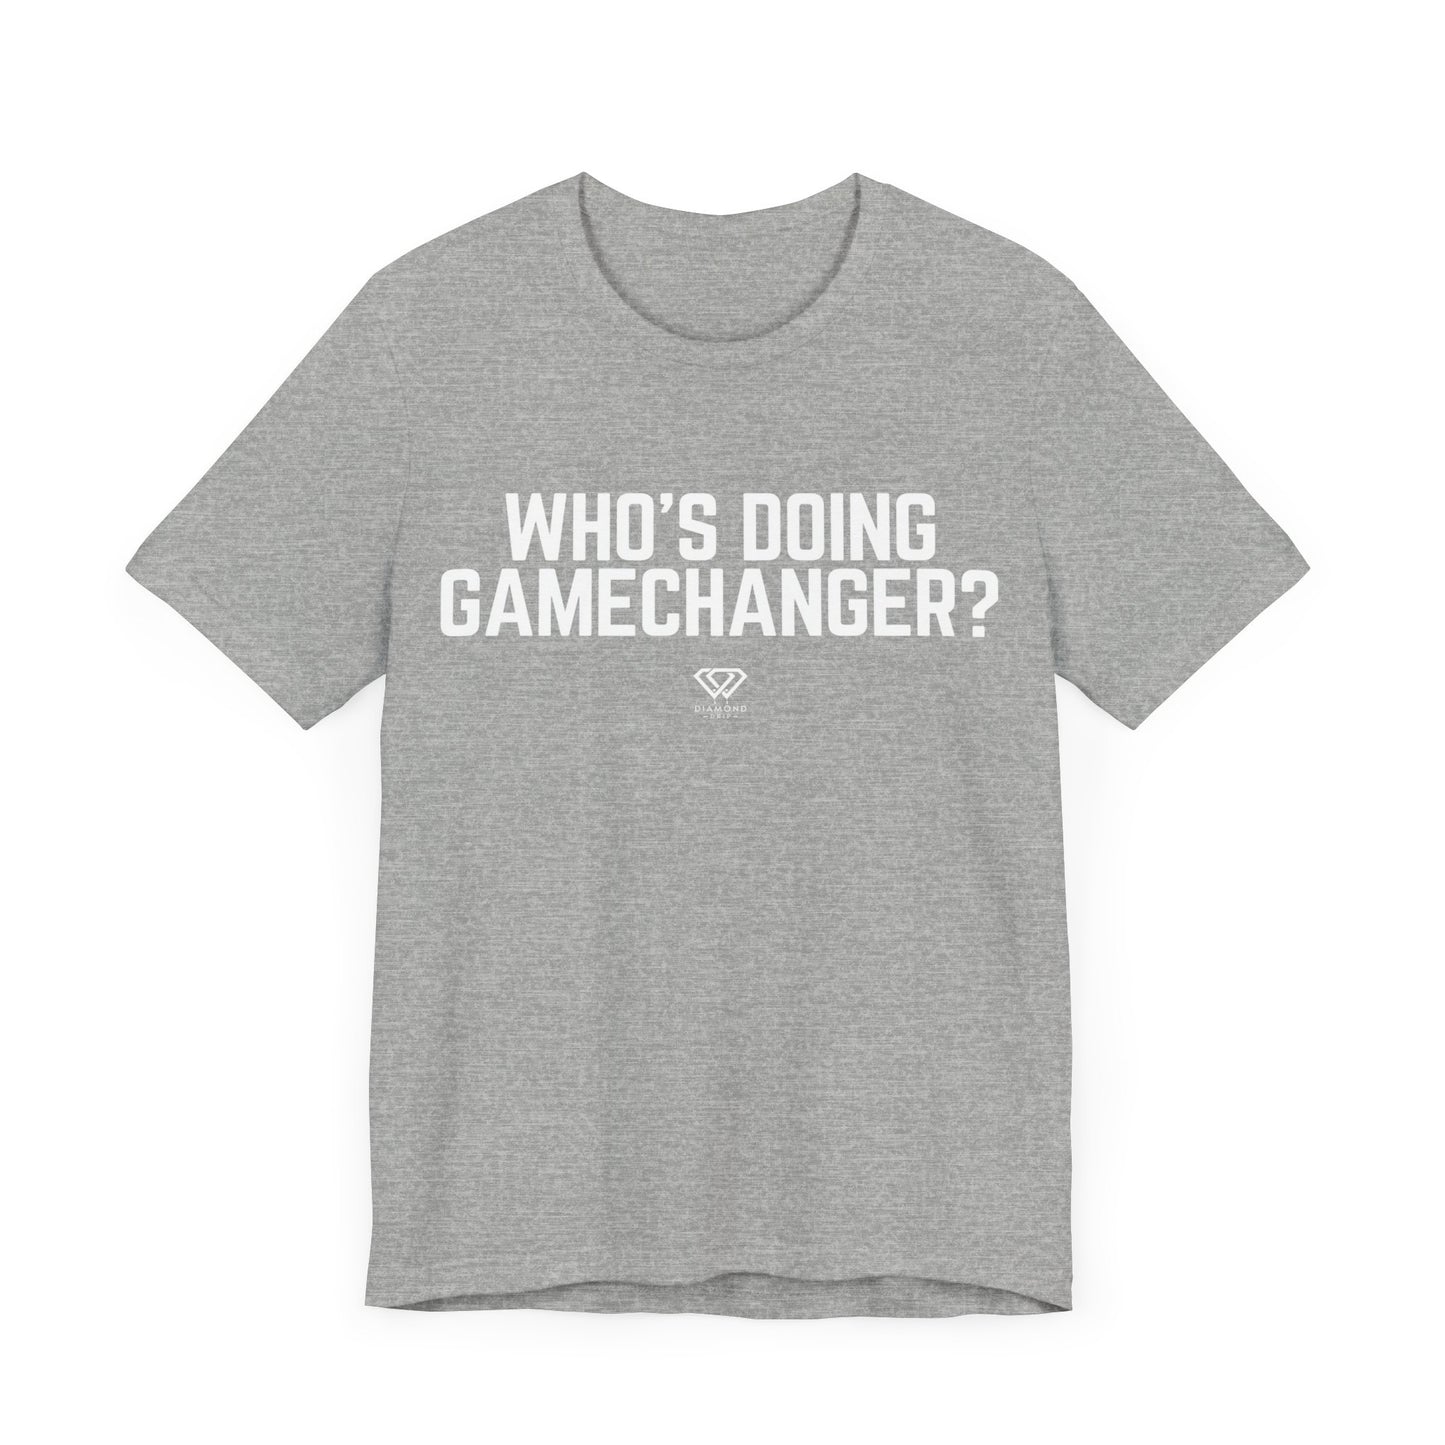 Who's Doing Gamechanger?